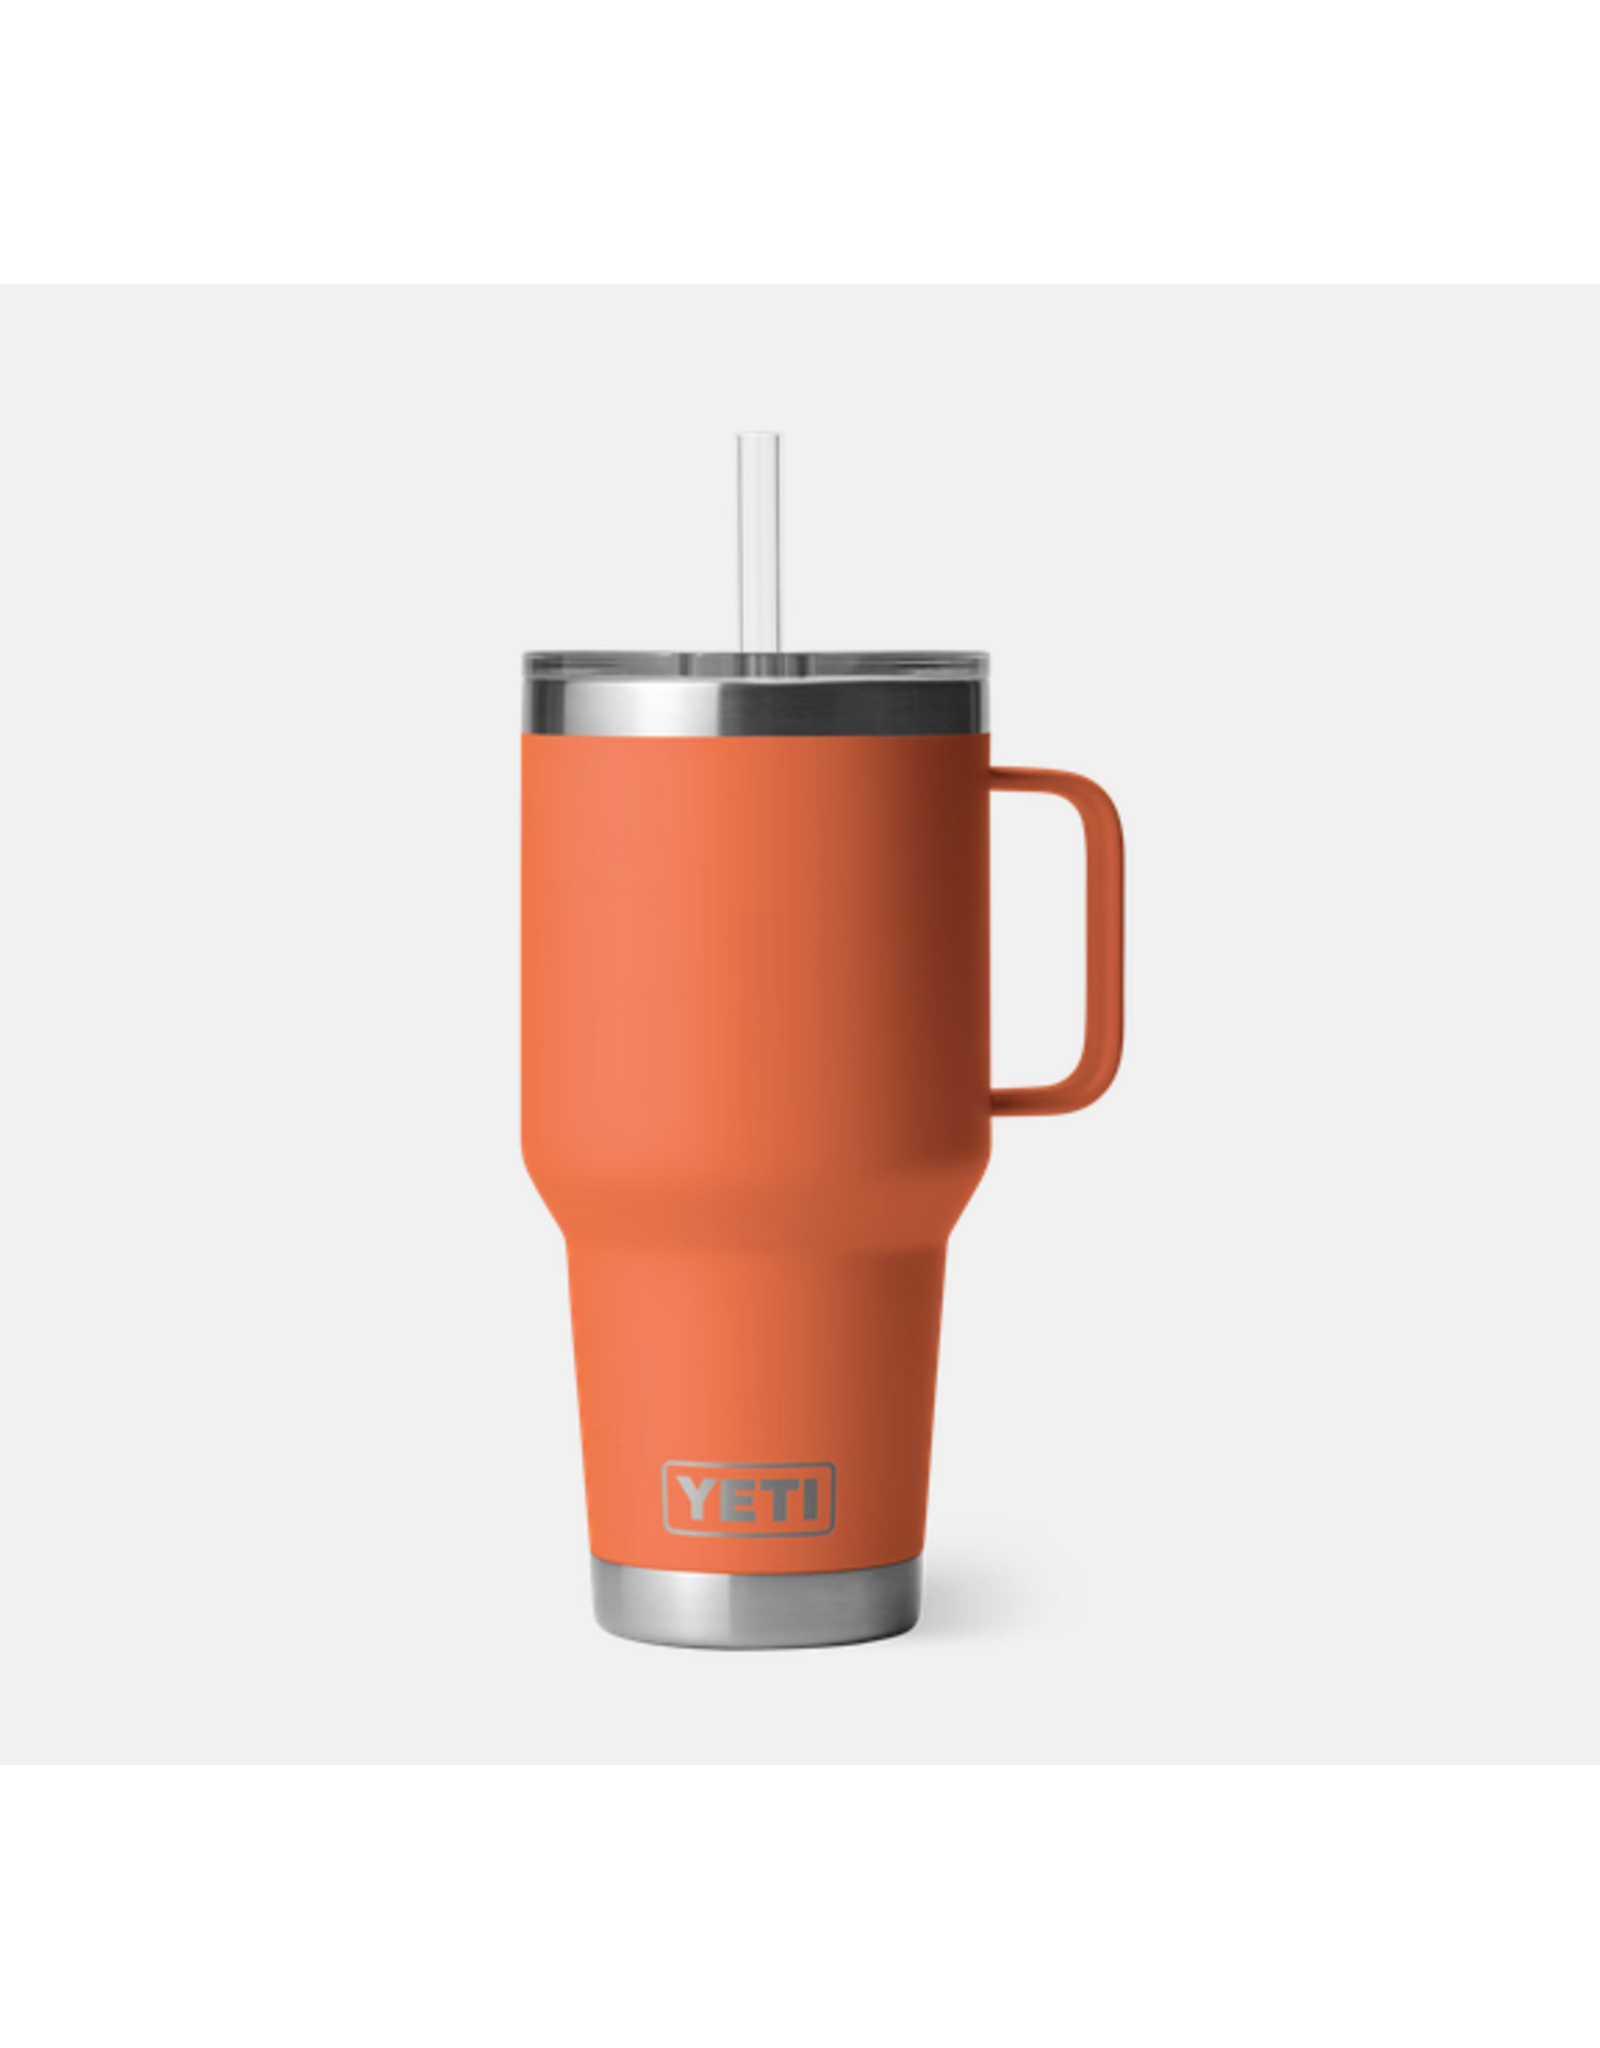 Yeti Yeti Rambler 35oz/1L Travel Mug